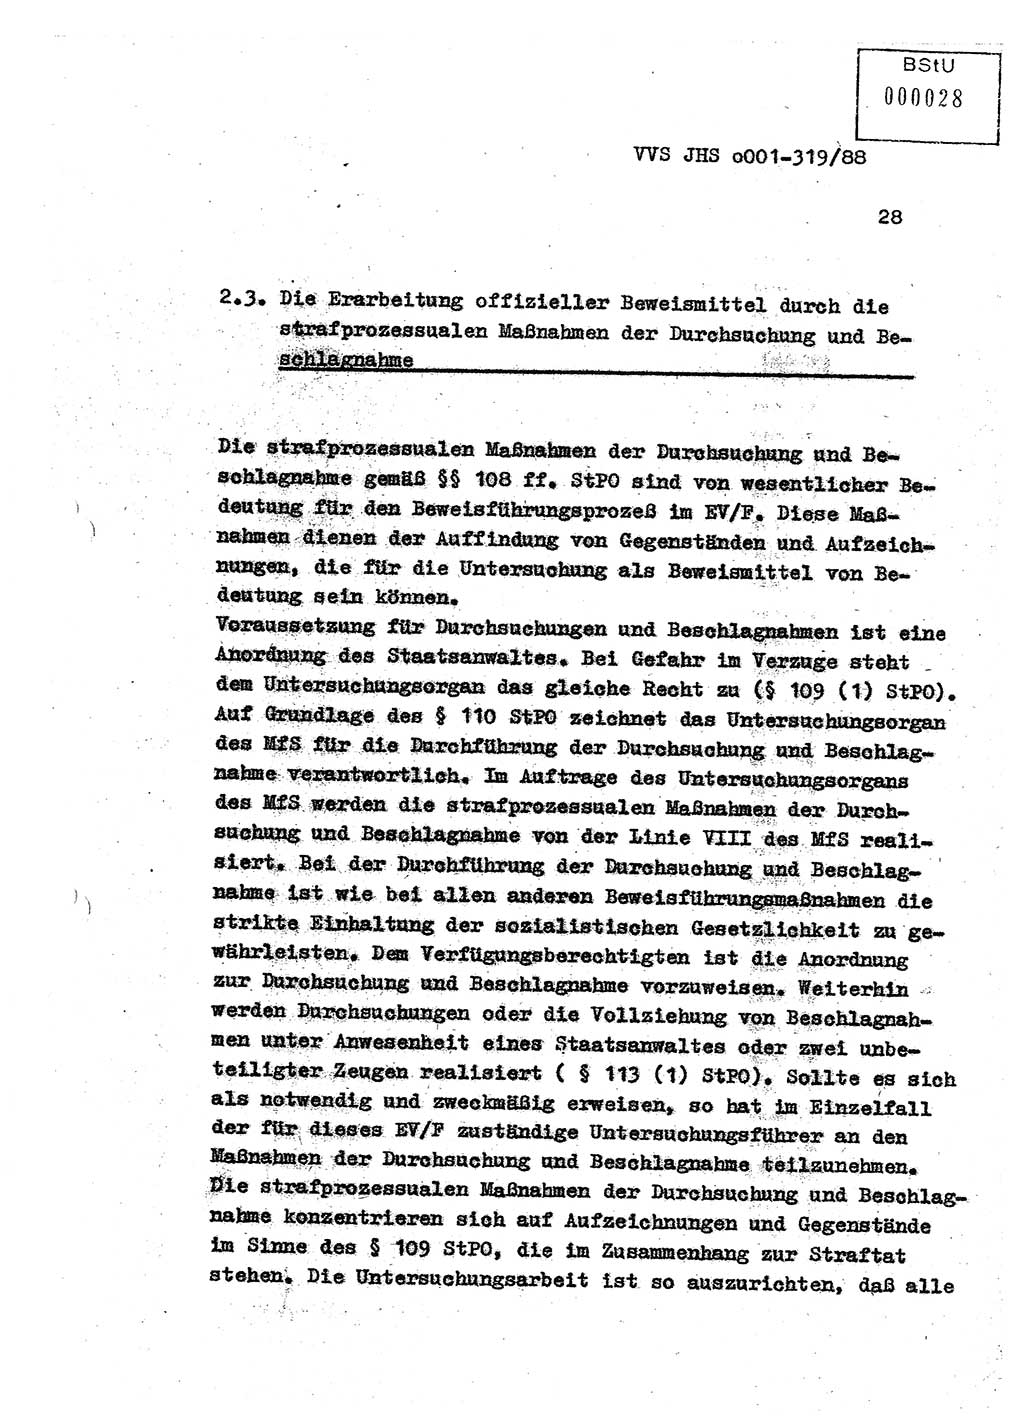 Diplomarbeit Offiziersschüler Holger Zirnstein (HA Ⅸ/9), Ministerium für Staatssicherheit (MfS) [Deutsche Demokratische Republik (DDR)], Juristische Hochschule (JHS), Vertrauliche Verschlußsache (VVS) o001-319/88, Potsdam 1988, Blatt 28 (Dipl.-Arb. MfS DDR JHS VVS o001-319/88 1988, Bl. 28)